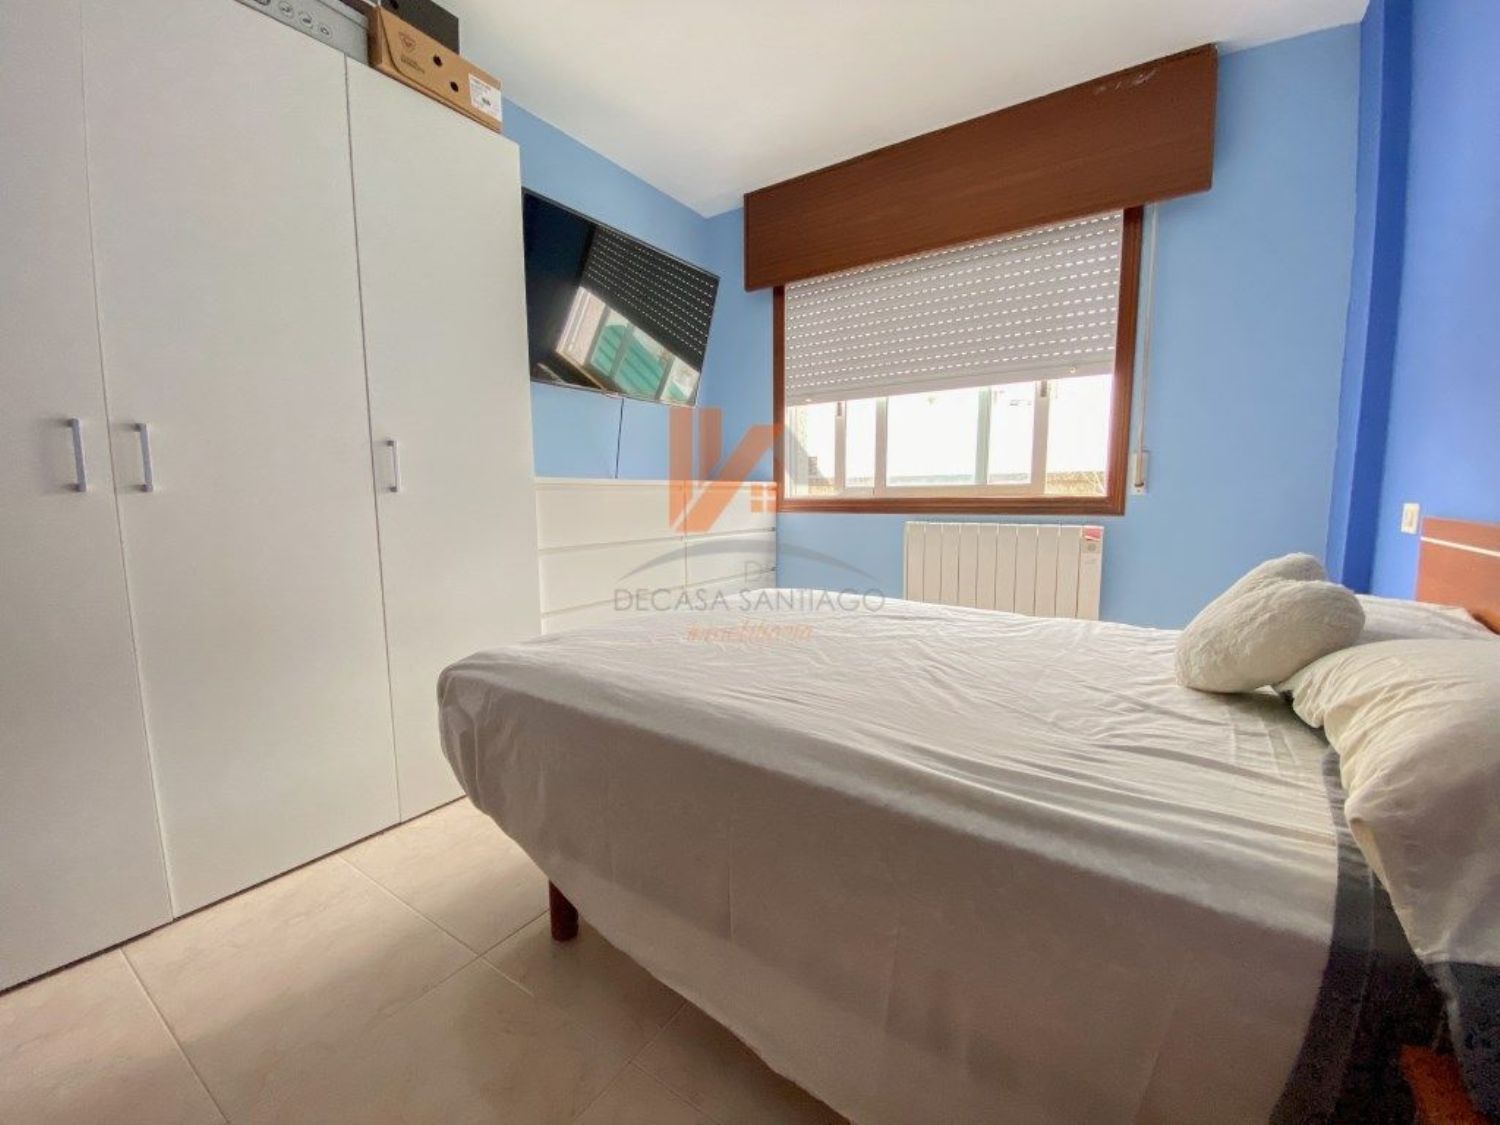 Apartament en venda a primera línia de mar a Calle Ram,bla a Porto do Son